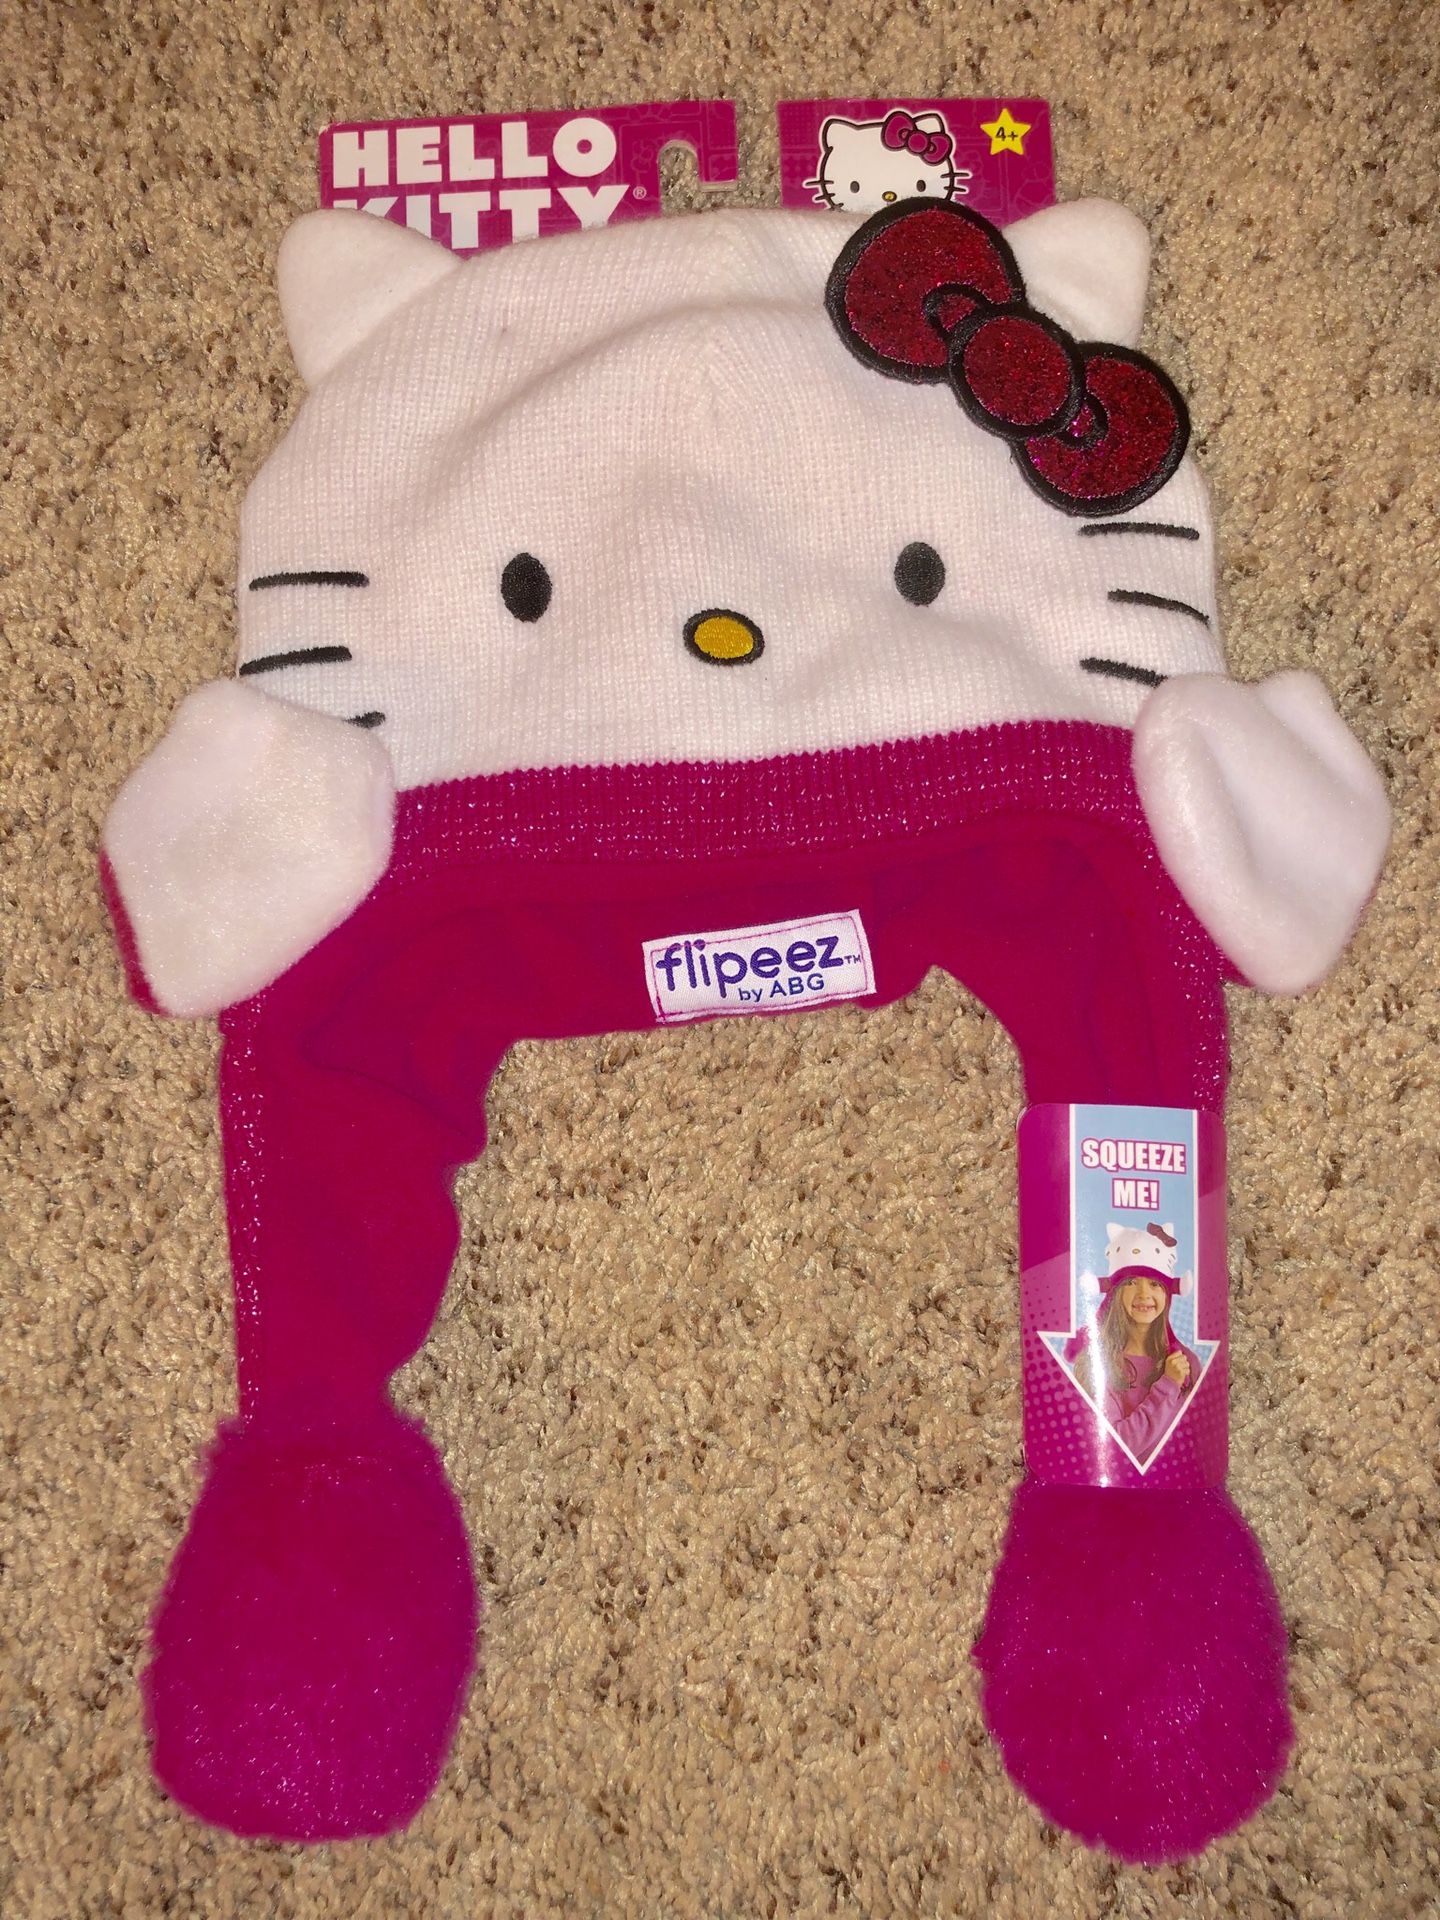 Hello Kitty Flipeez